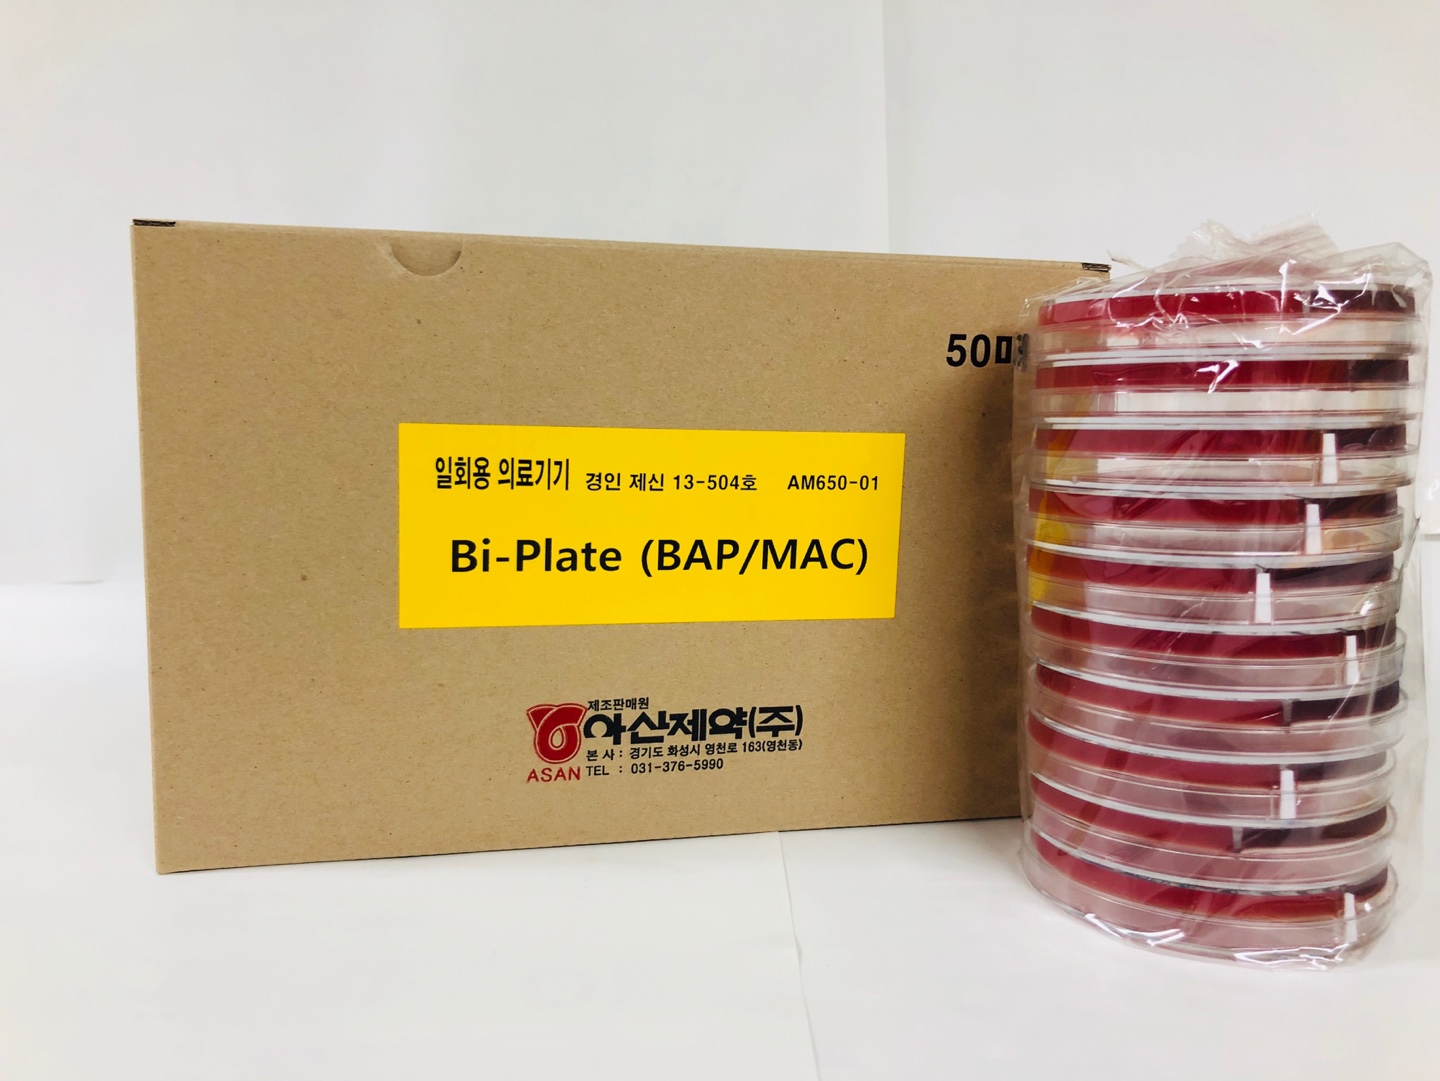 Bi-Plate (BAP/MAC)